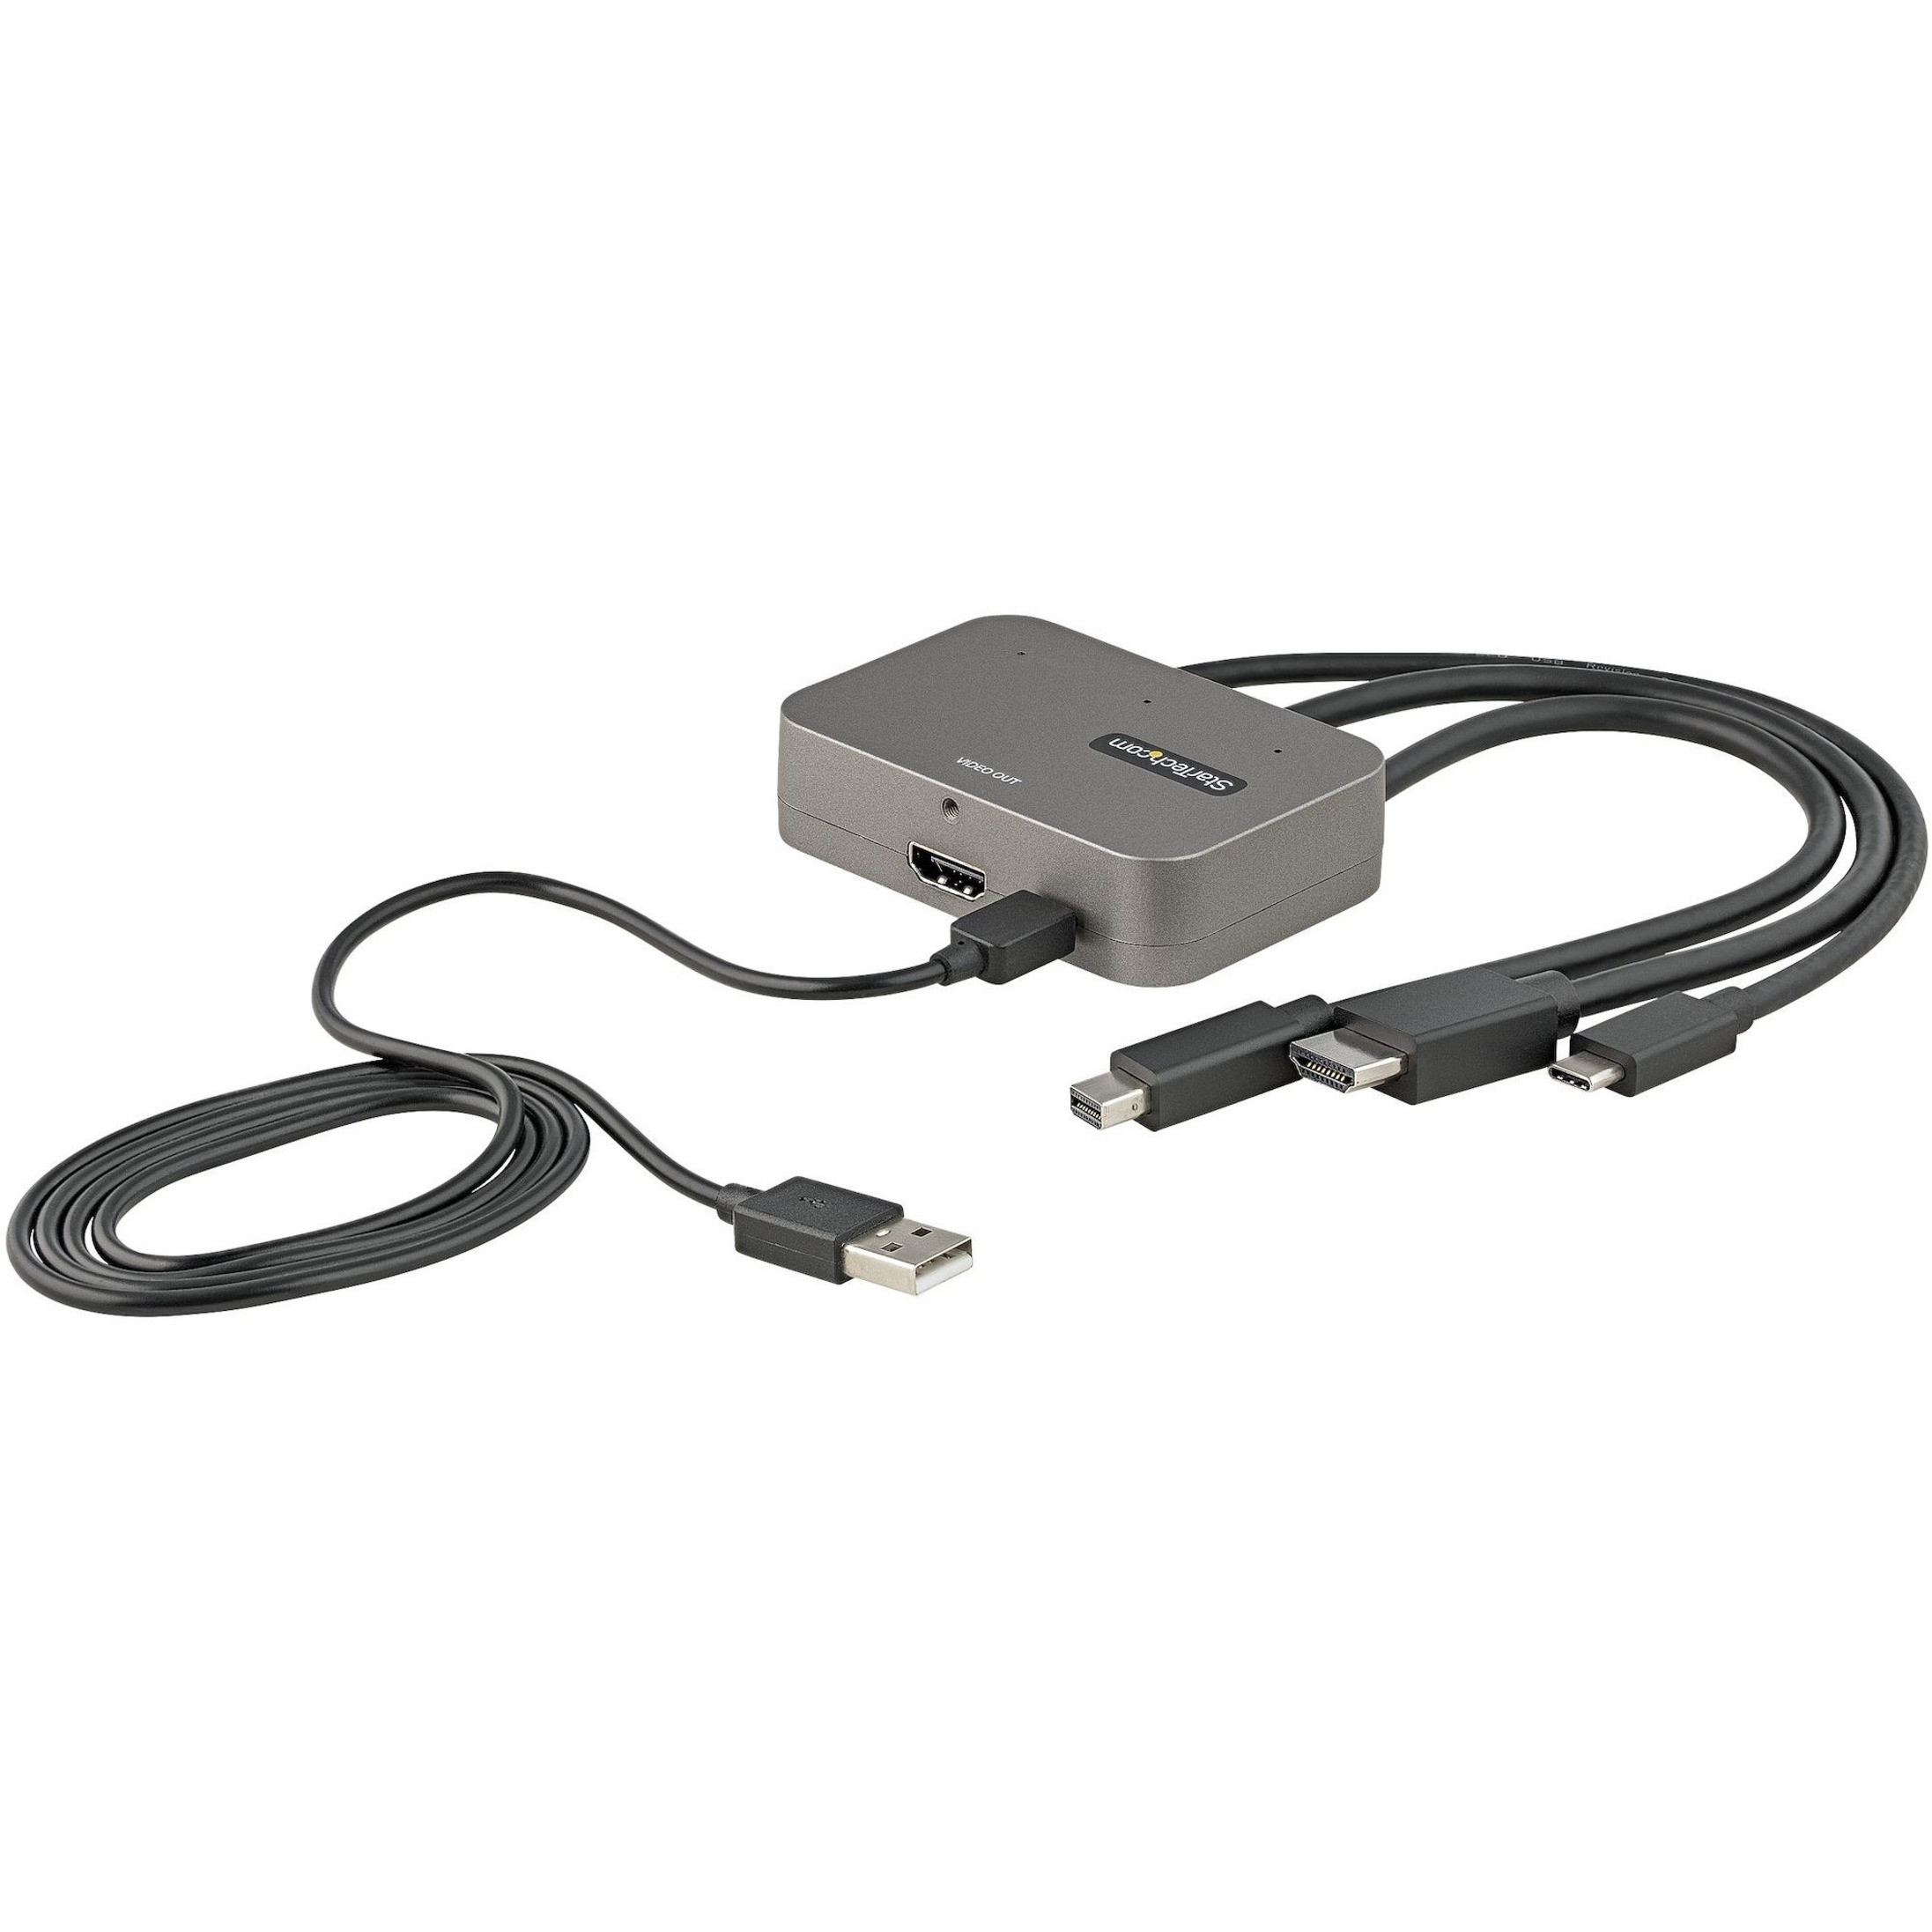 Multiport to HDMI Digital AV Adapter